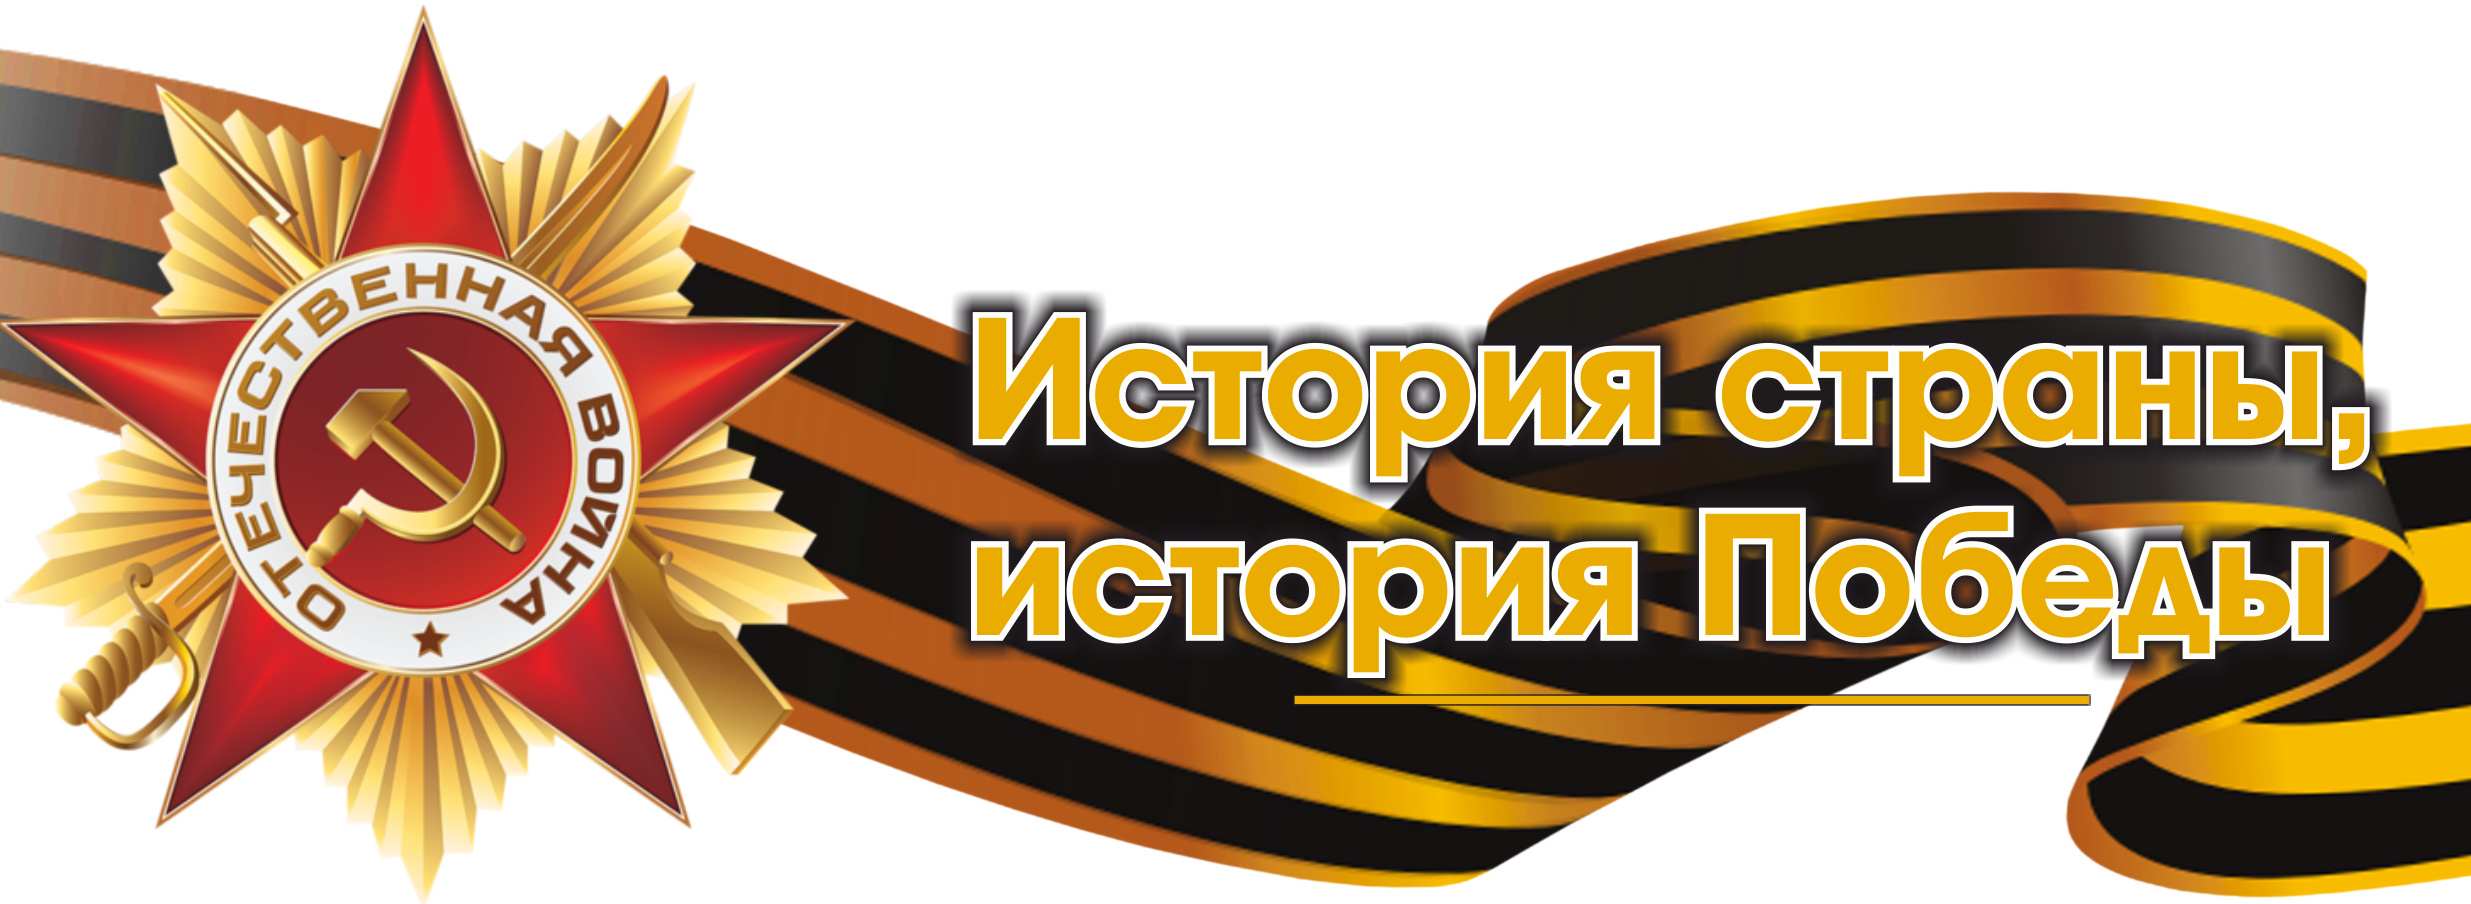 Логотип "История страны, история Победы"